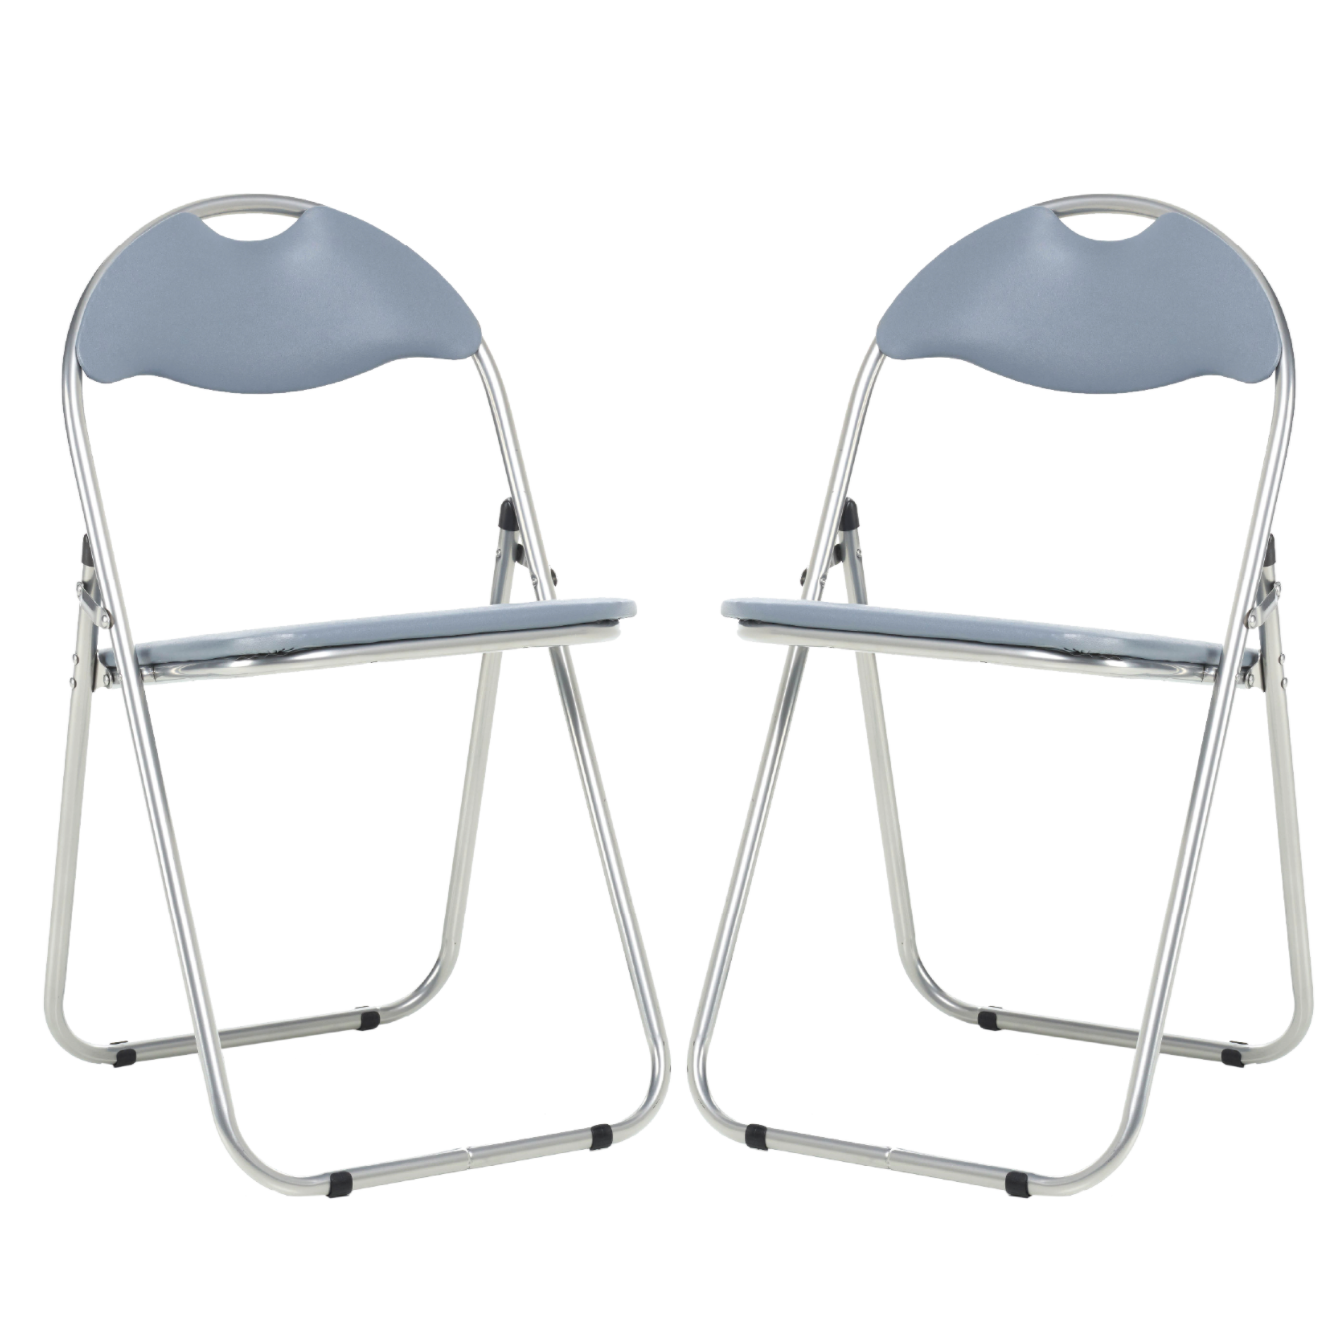 Folding Padded Office Chair - Grey Bravich LTD.